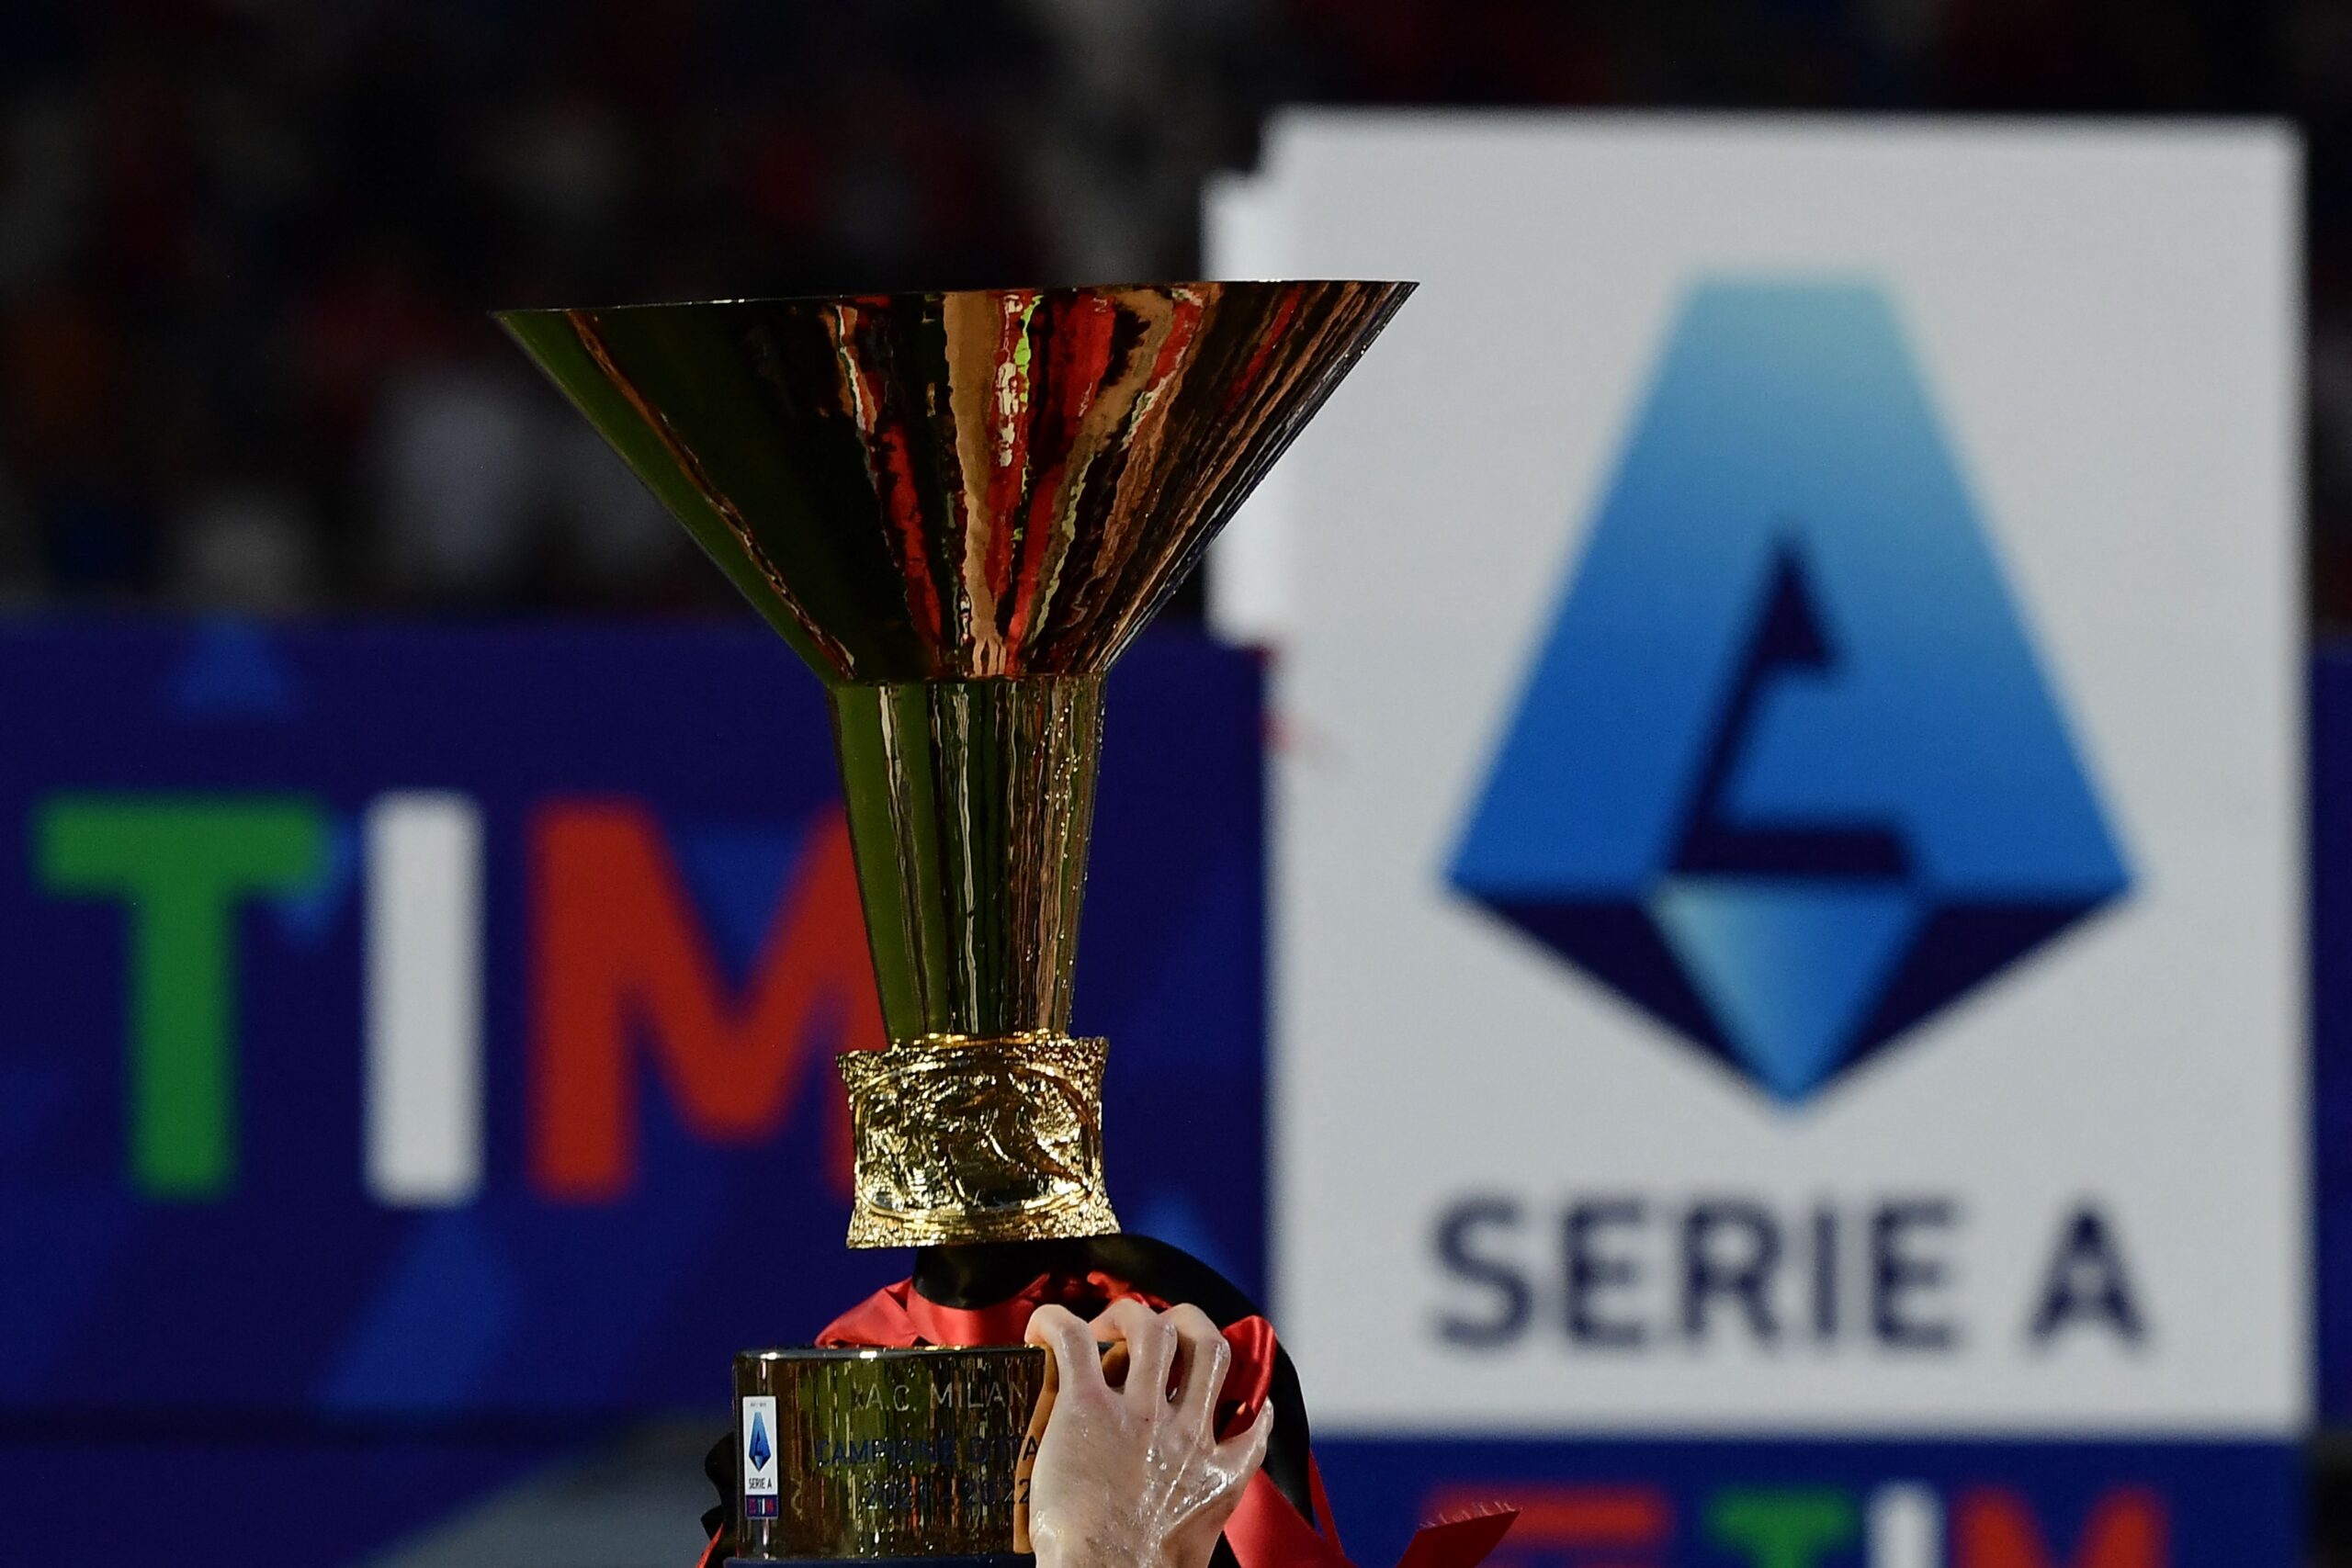 Campeonato Italiano: Tabela, Resultados e Jogos